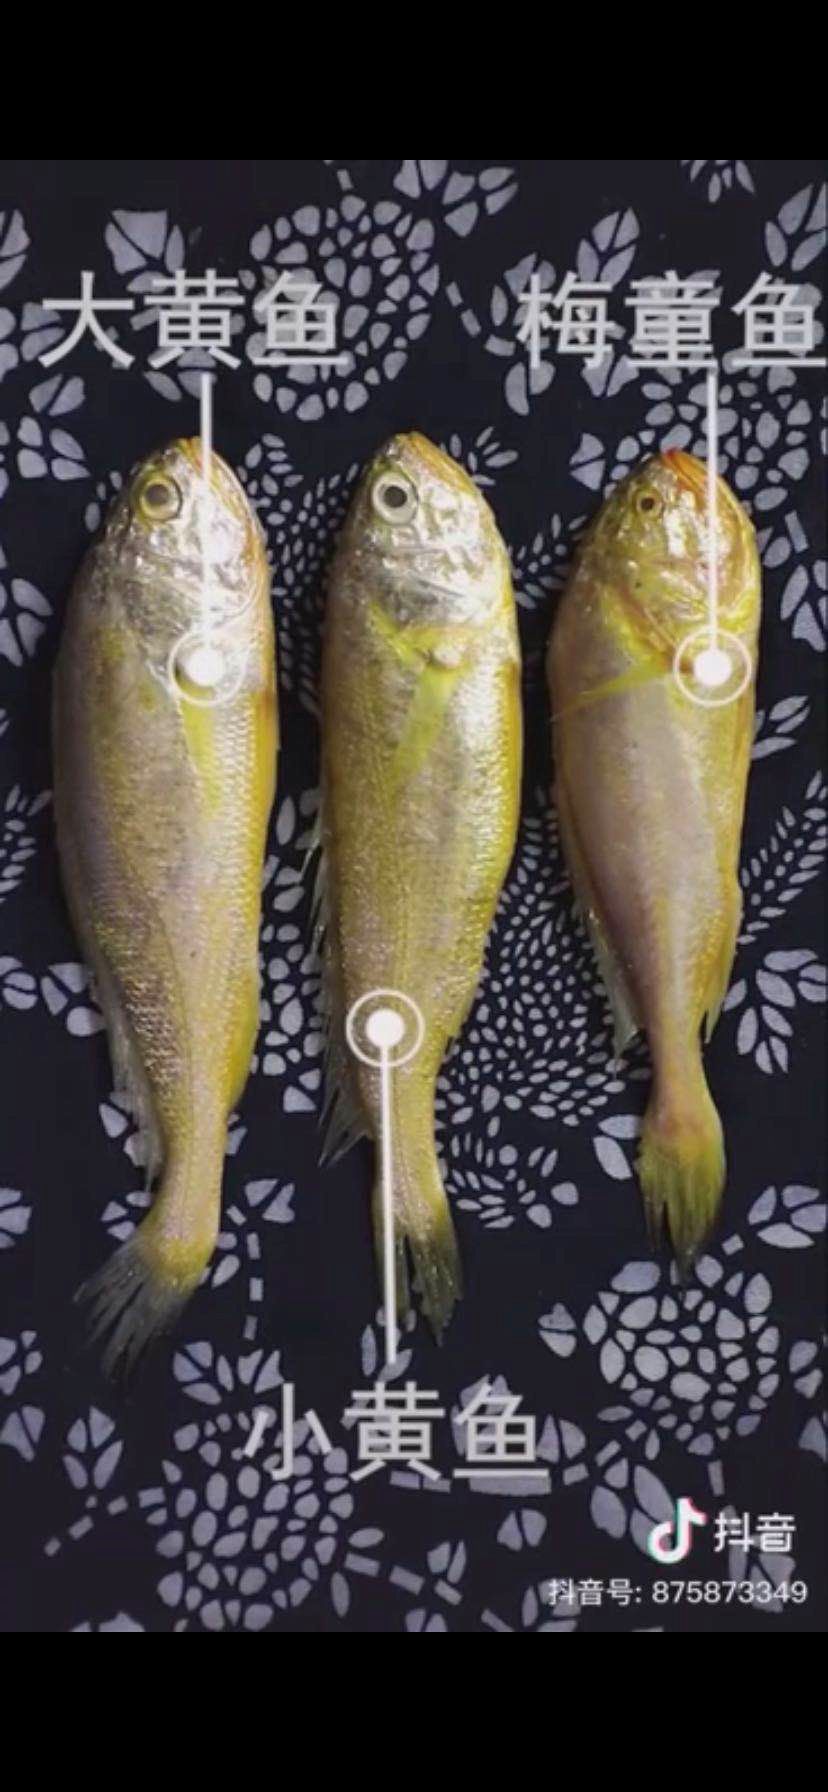 梅童鱼和小黄鱼的区别（梅子鱼贵还是小黄鱼贵）